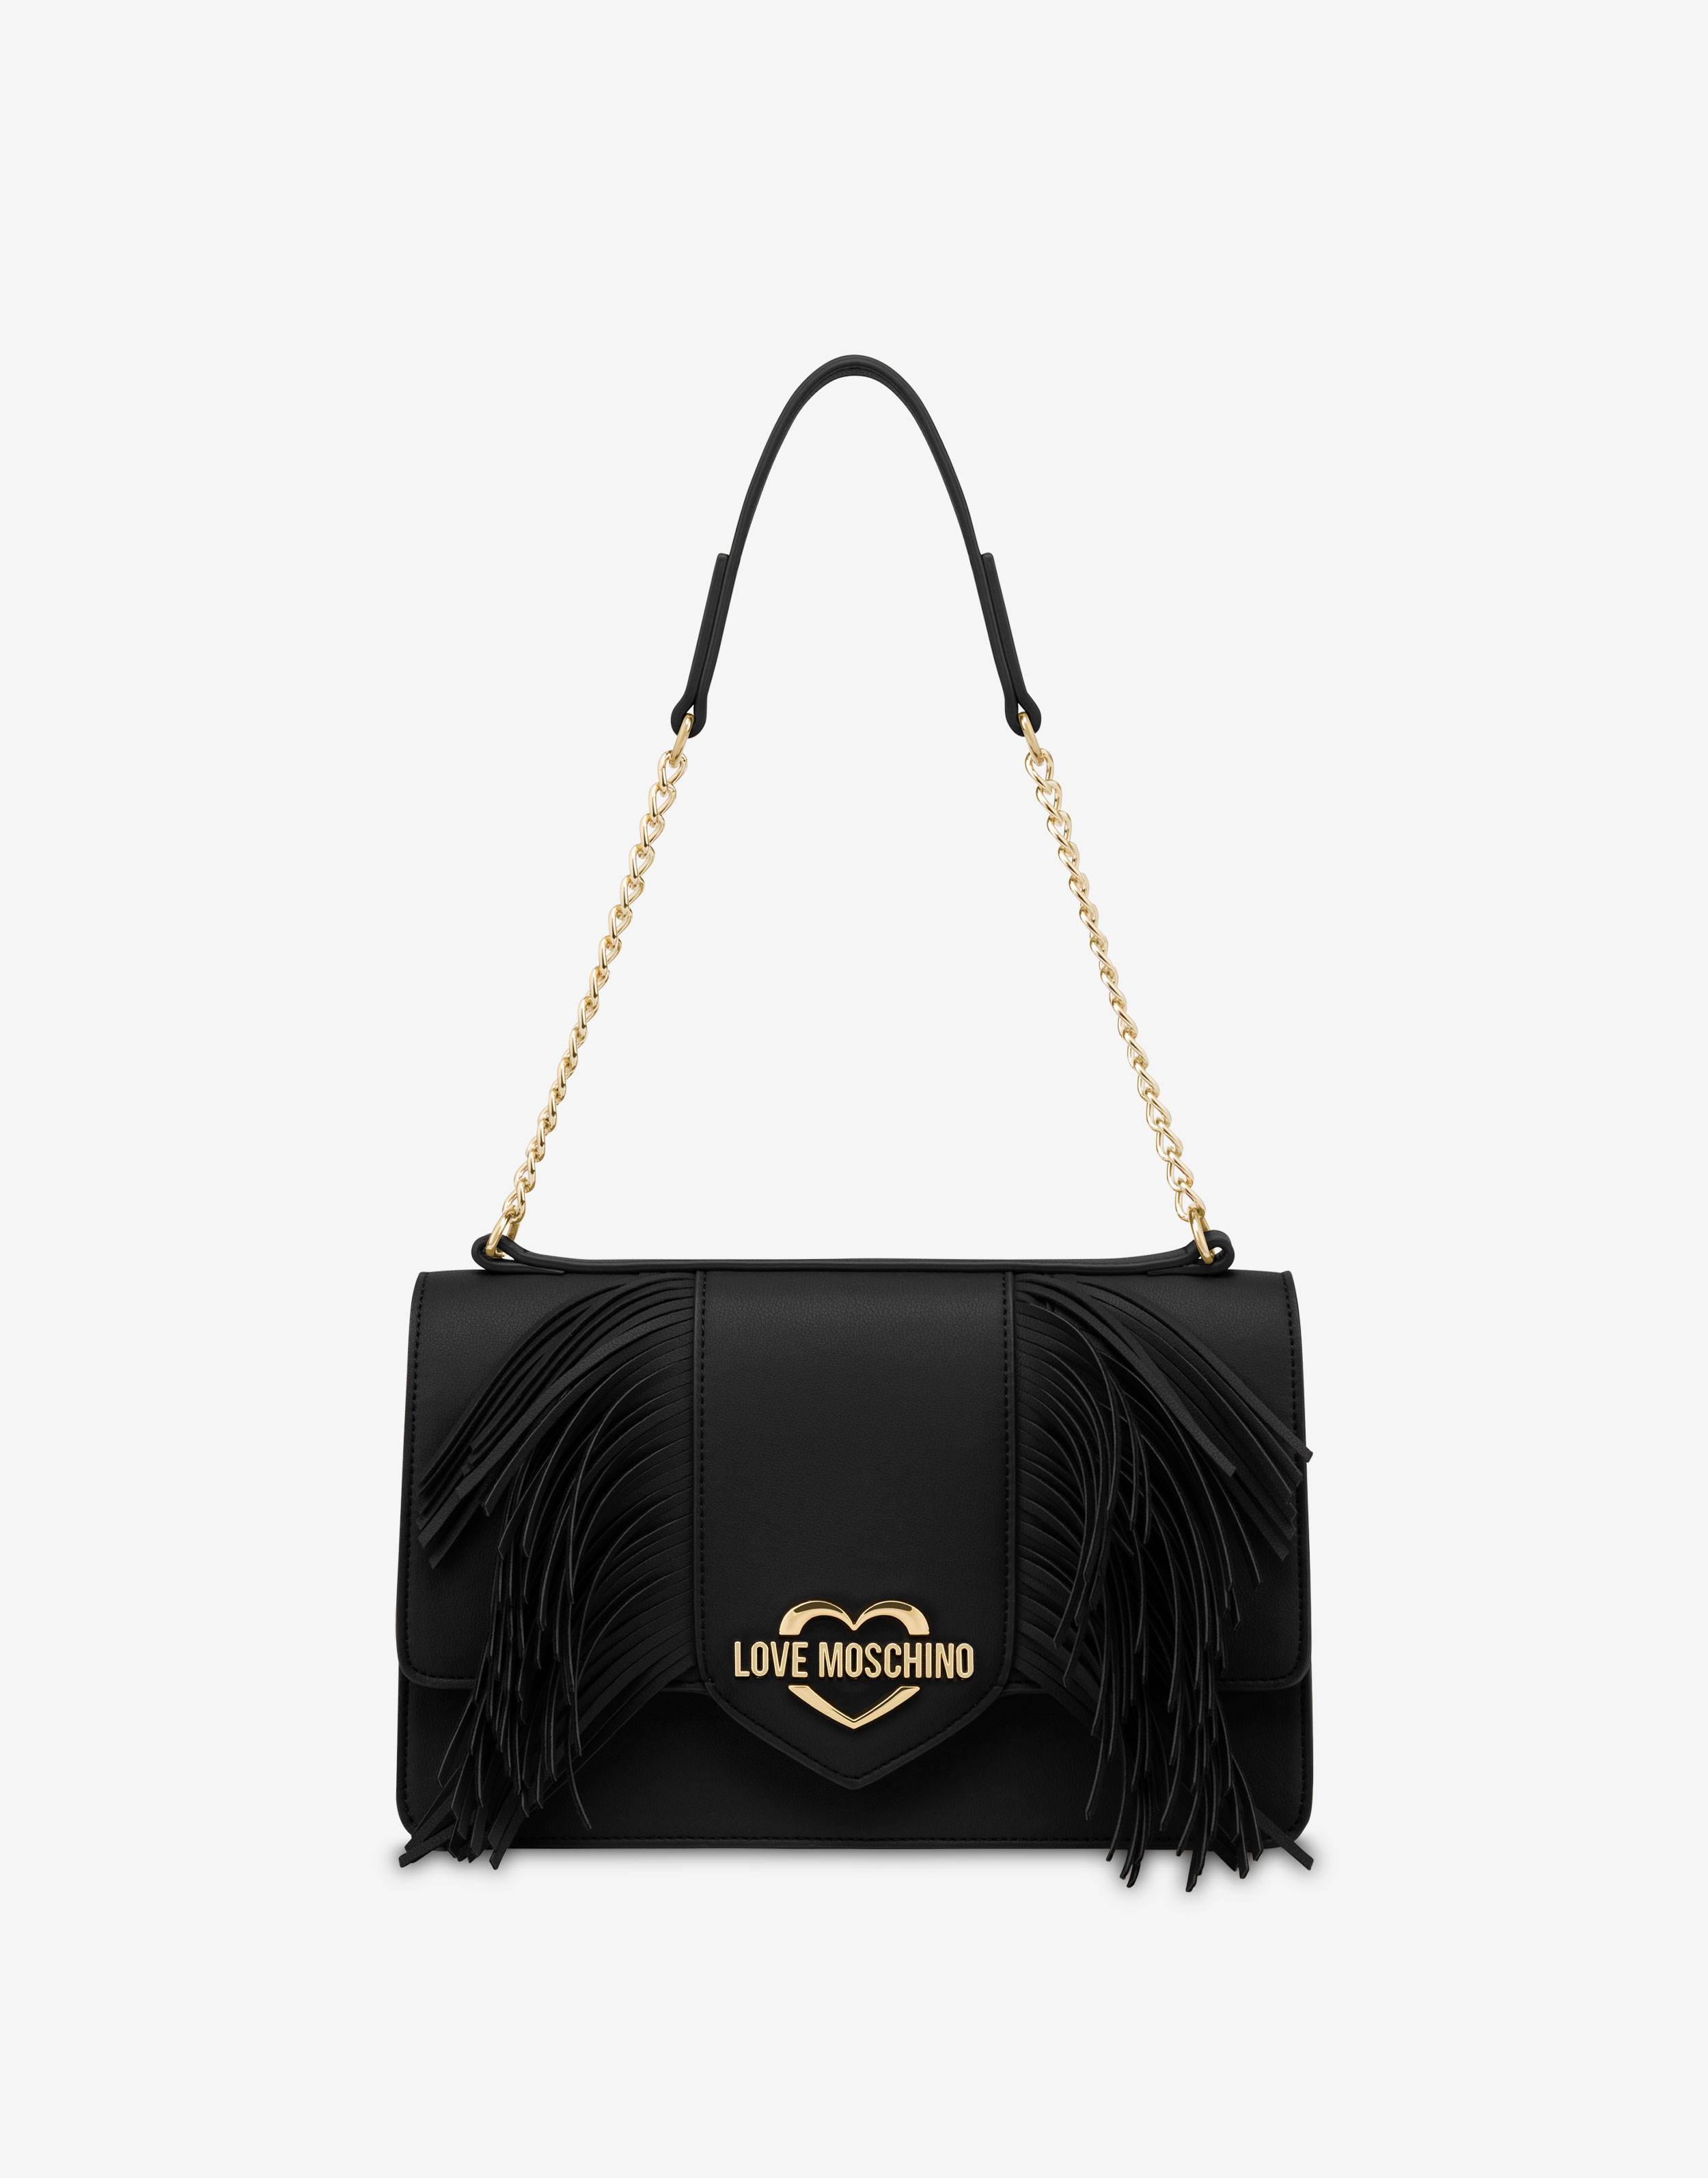 LOVE MOSCHINO, Black Women's Handbag